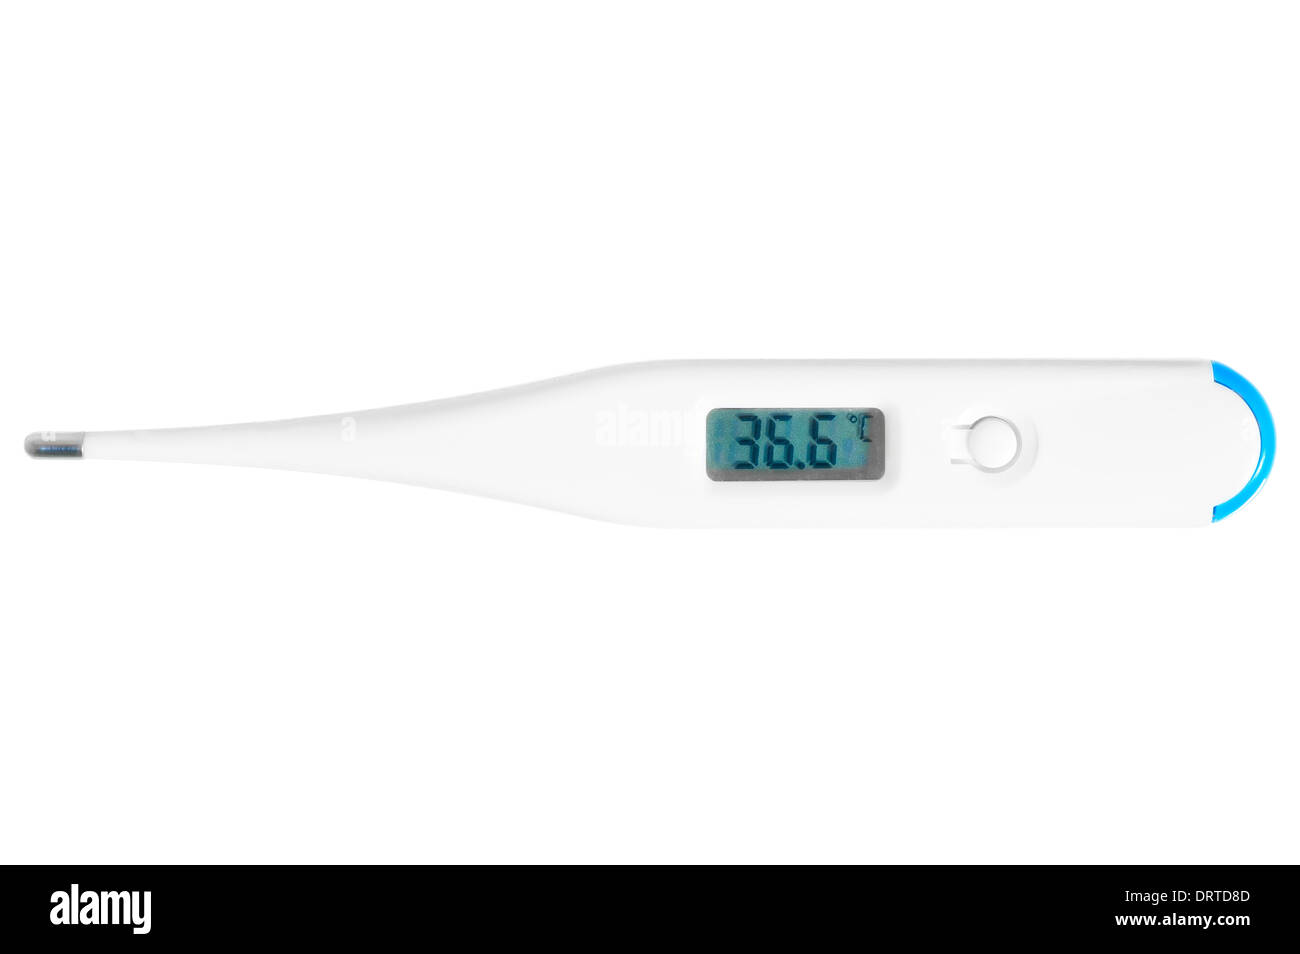 elektronisches Thermometer zeigt eine normale Körpertemperatur  Stockfotografie - Alamy